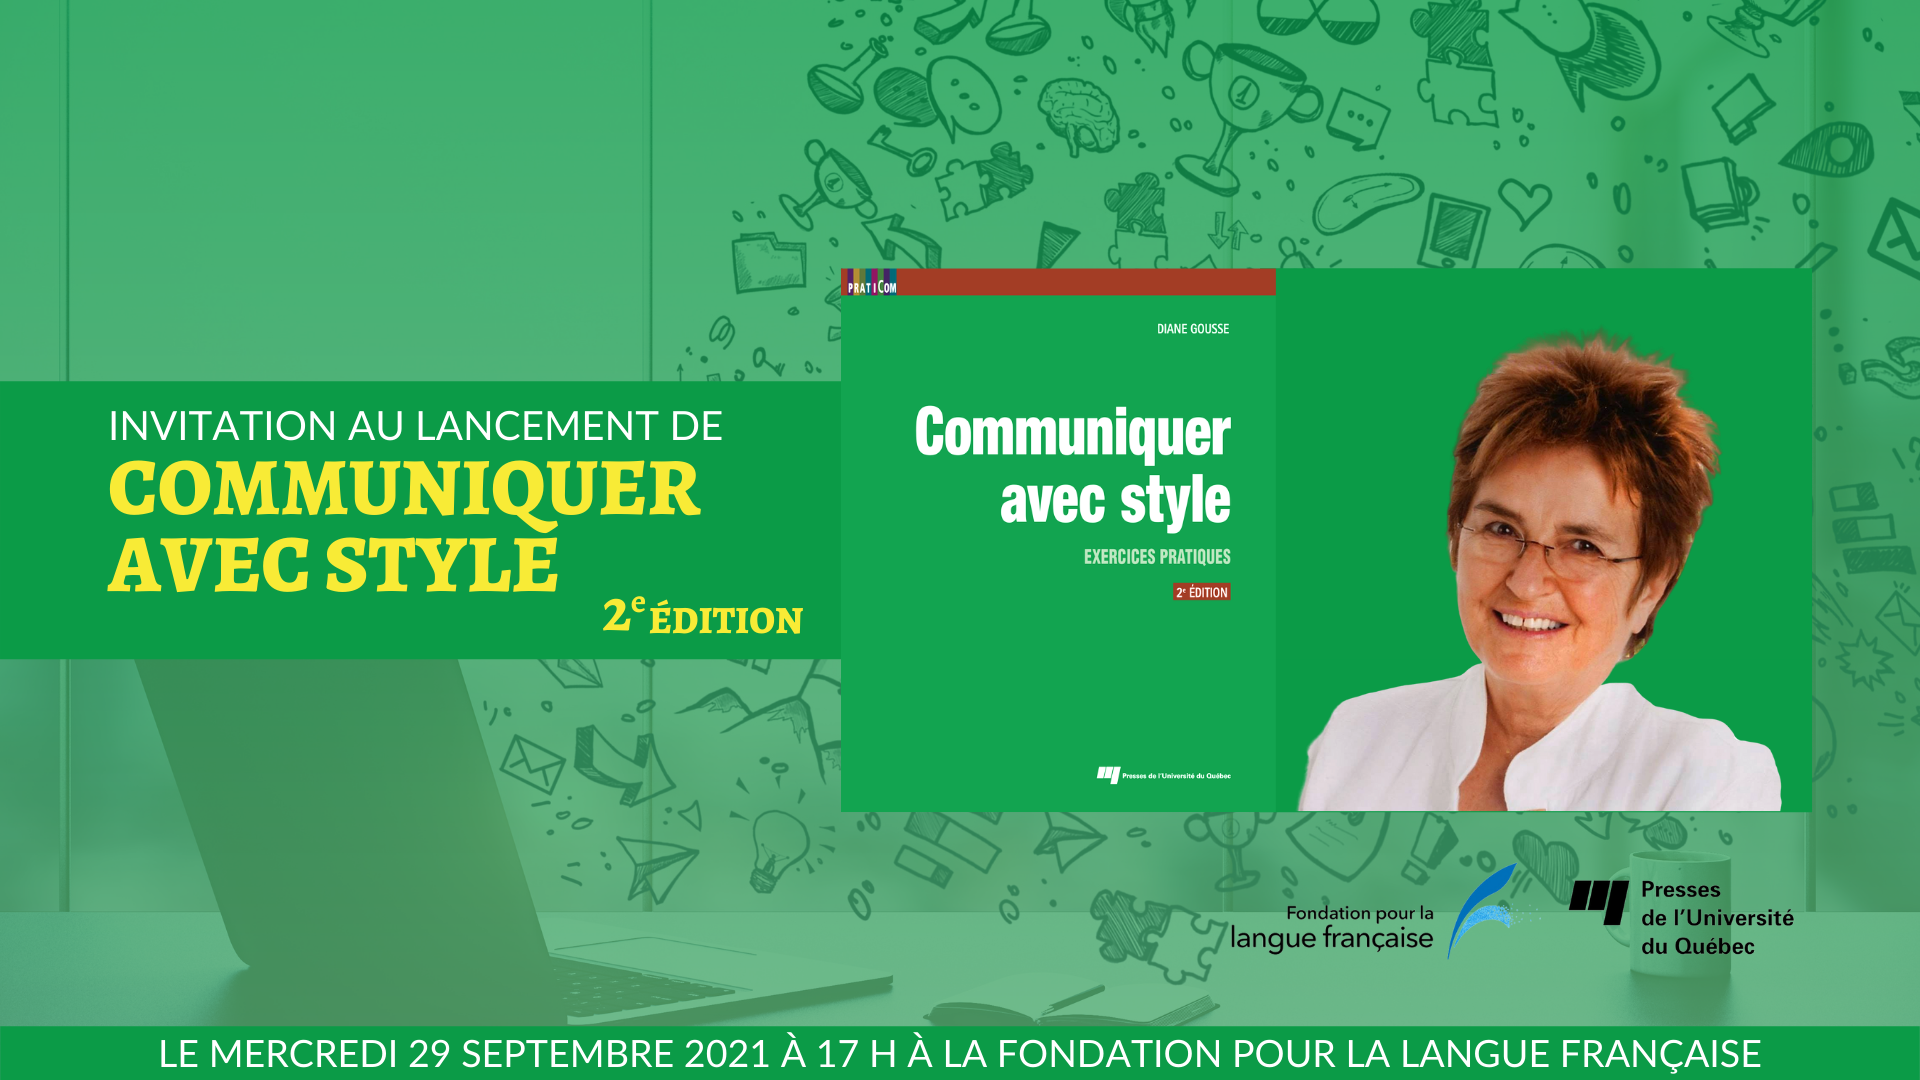 Lancement du livre : Communiquer avec style, 2e édition, une collaboration entre la Fondation pour la langue française et Diane Gousse